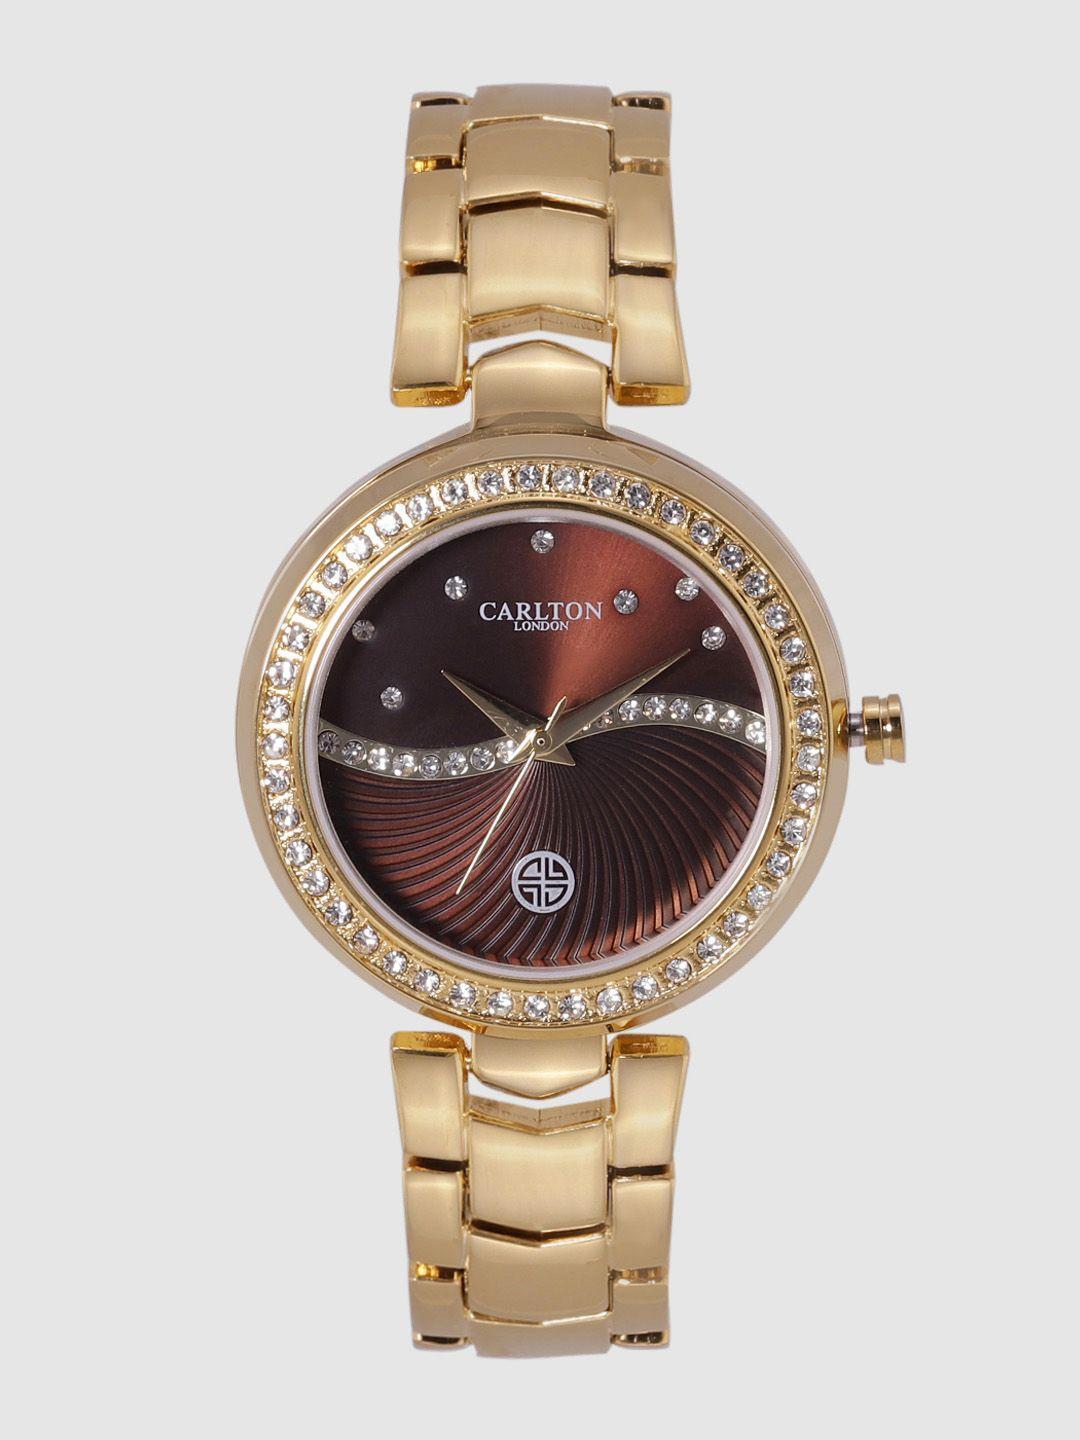 carlton london women bronze-toned analogue watch cl023gbrg